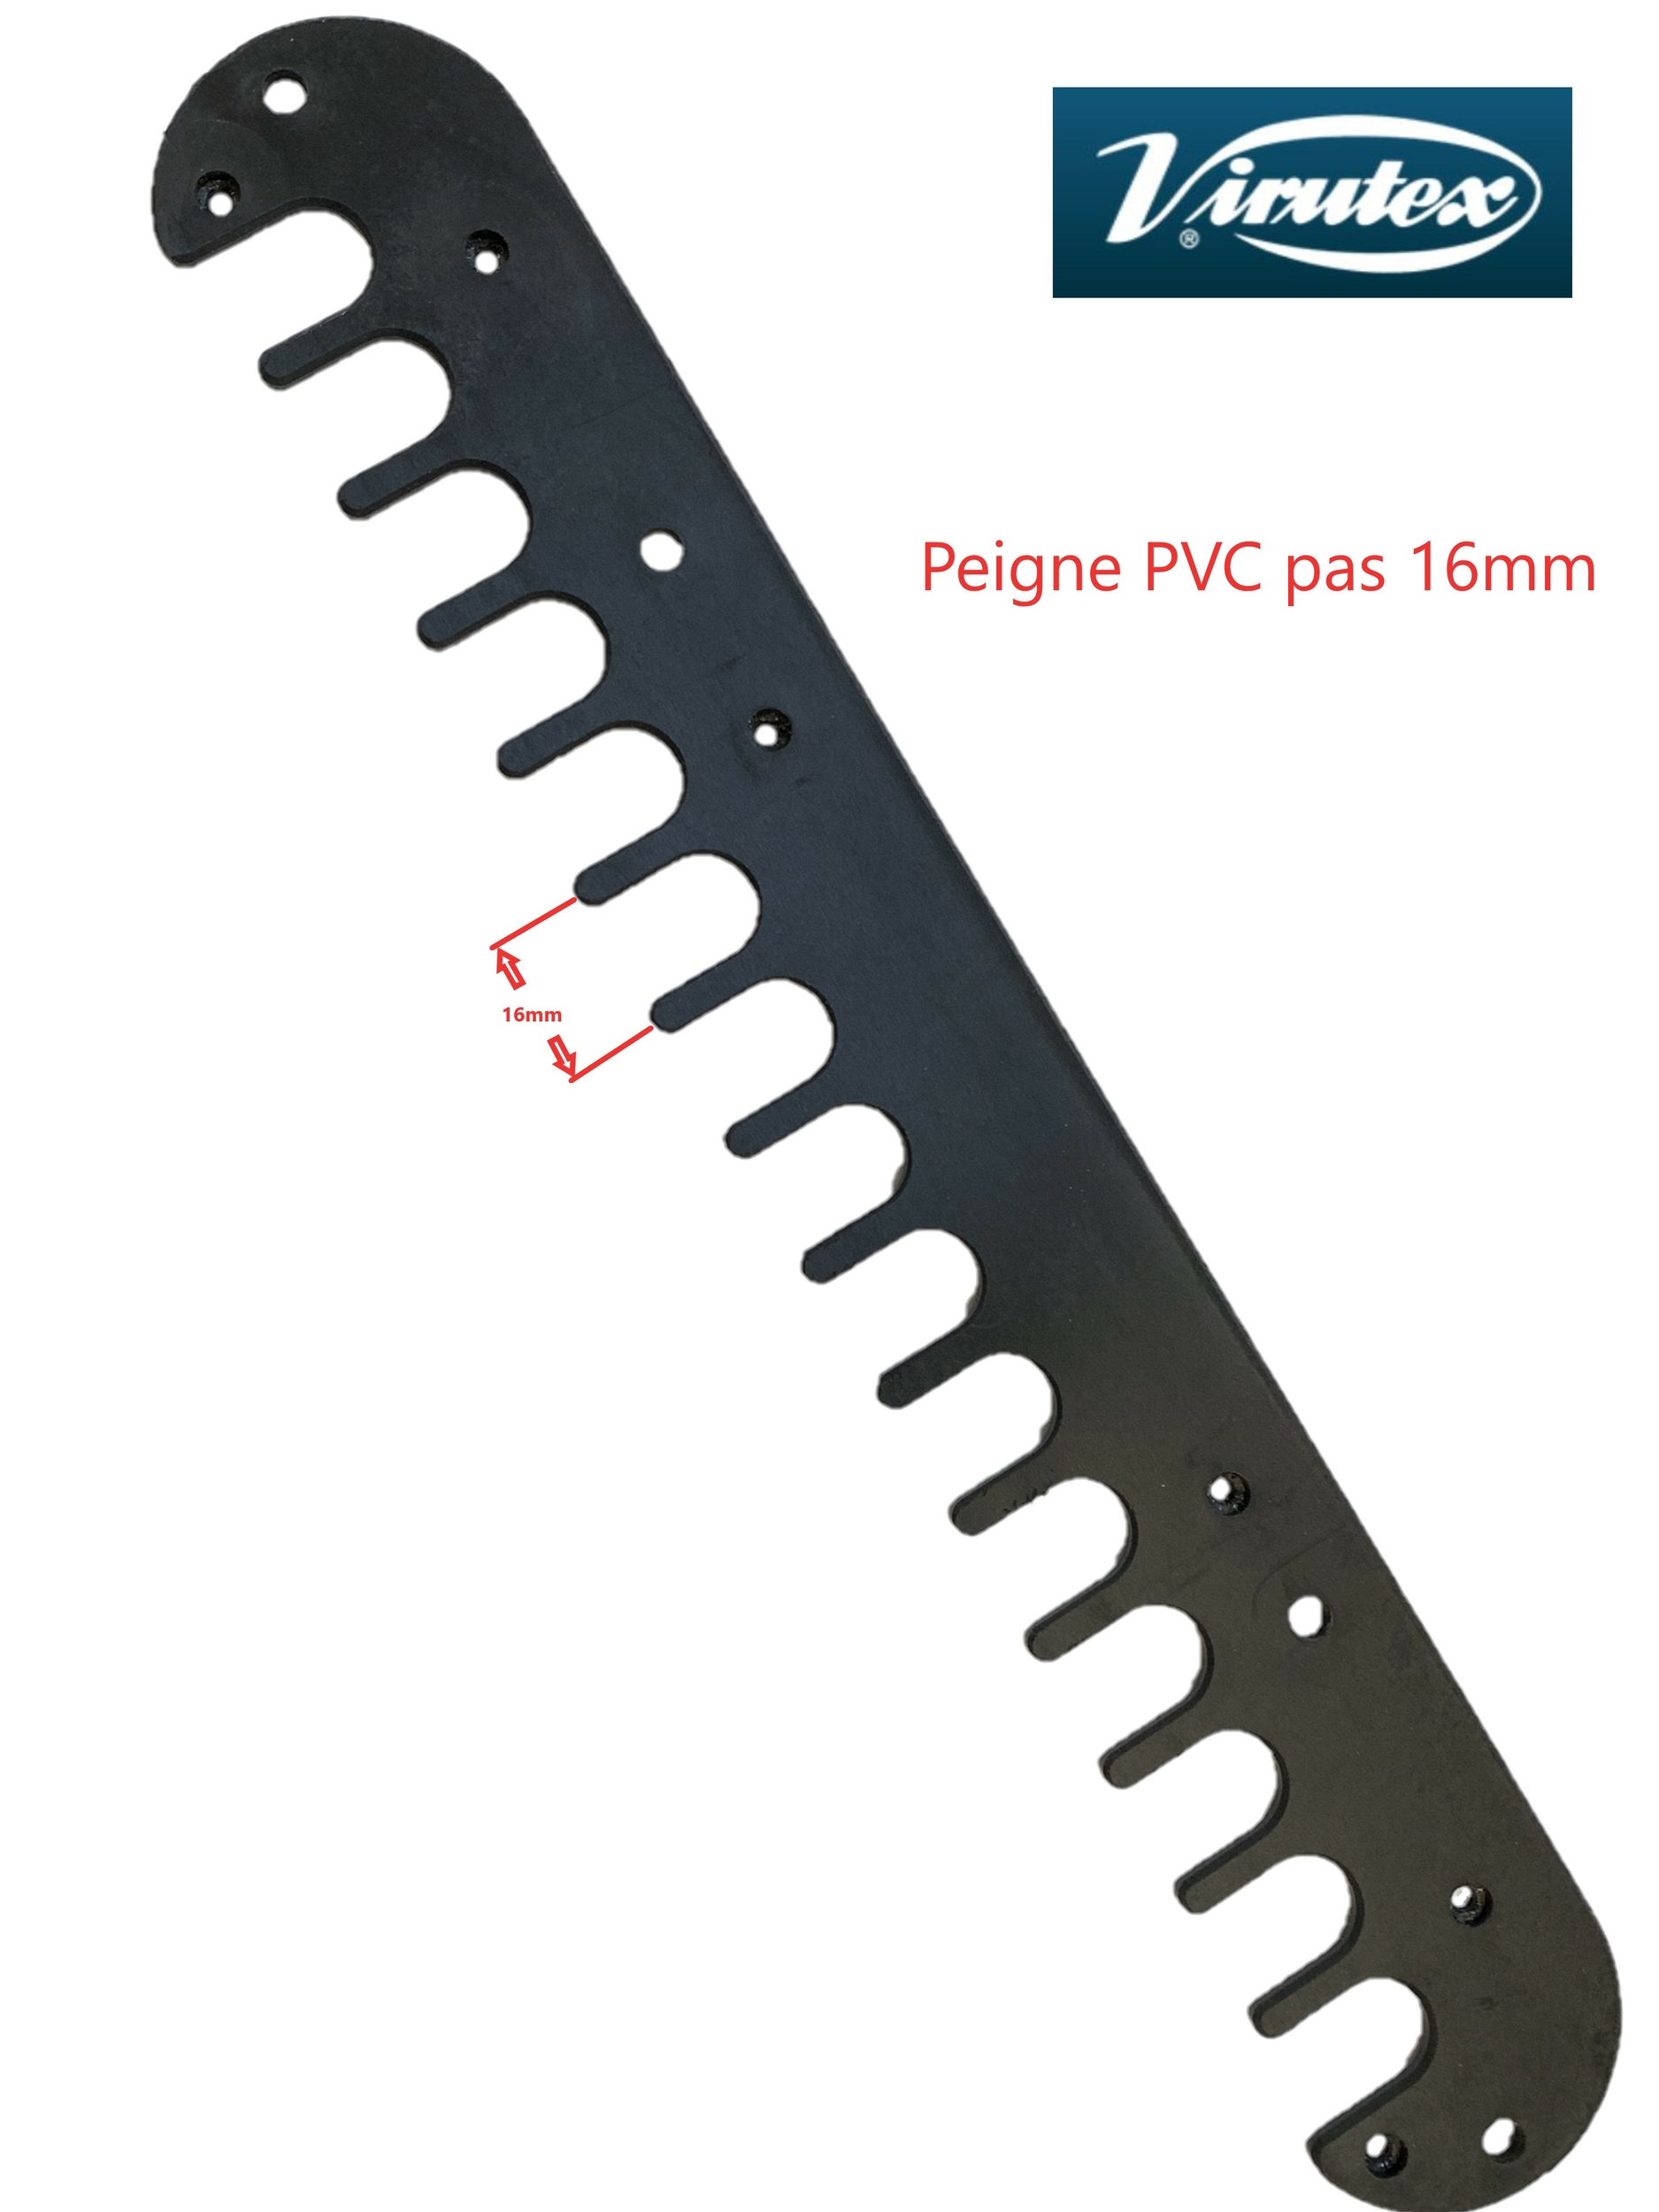 Peigne PVC copiage gabarit queue d'aronde 16mm PL11 Virutex